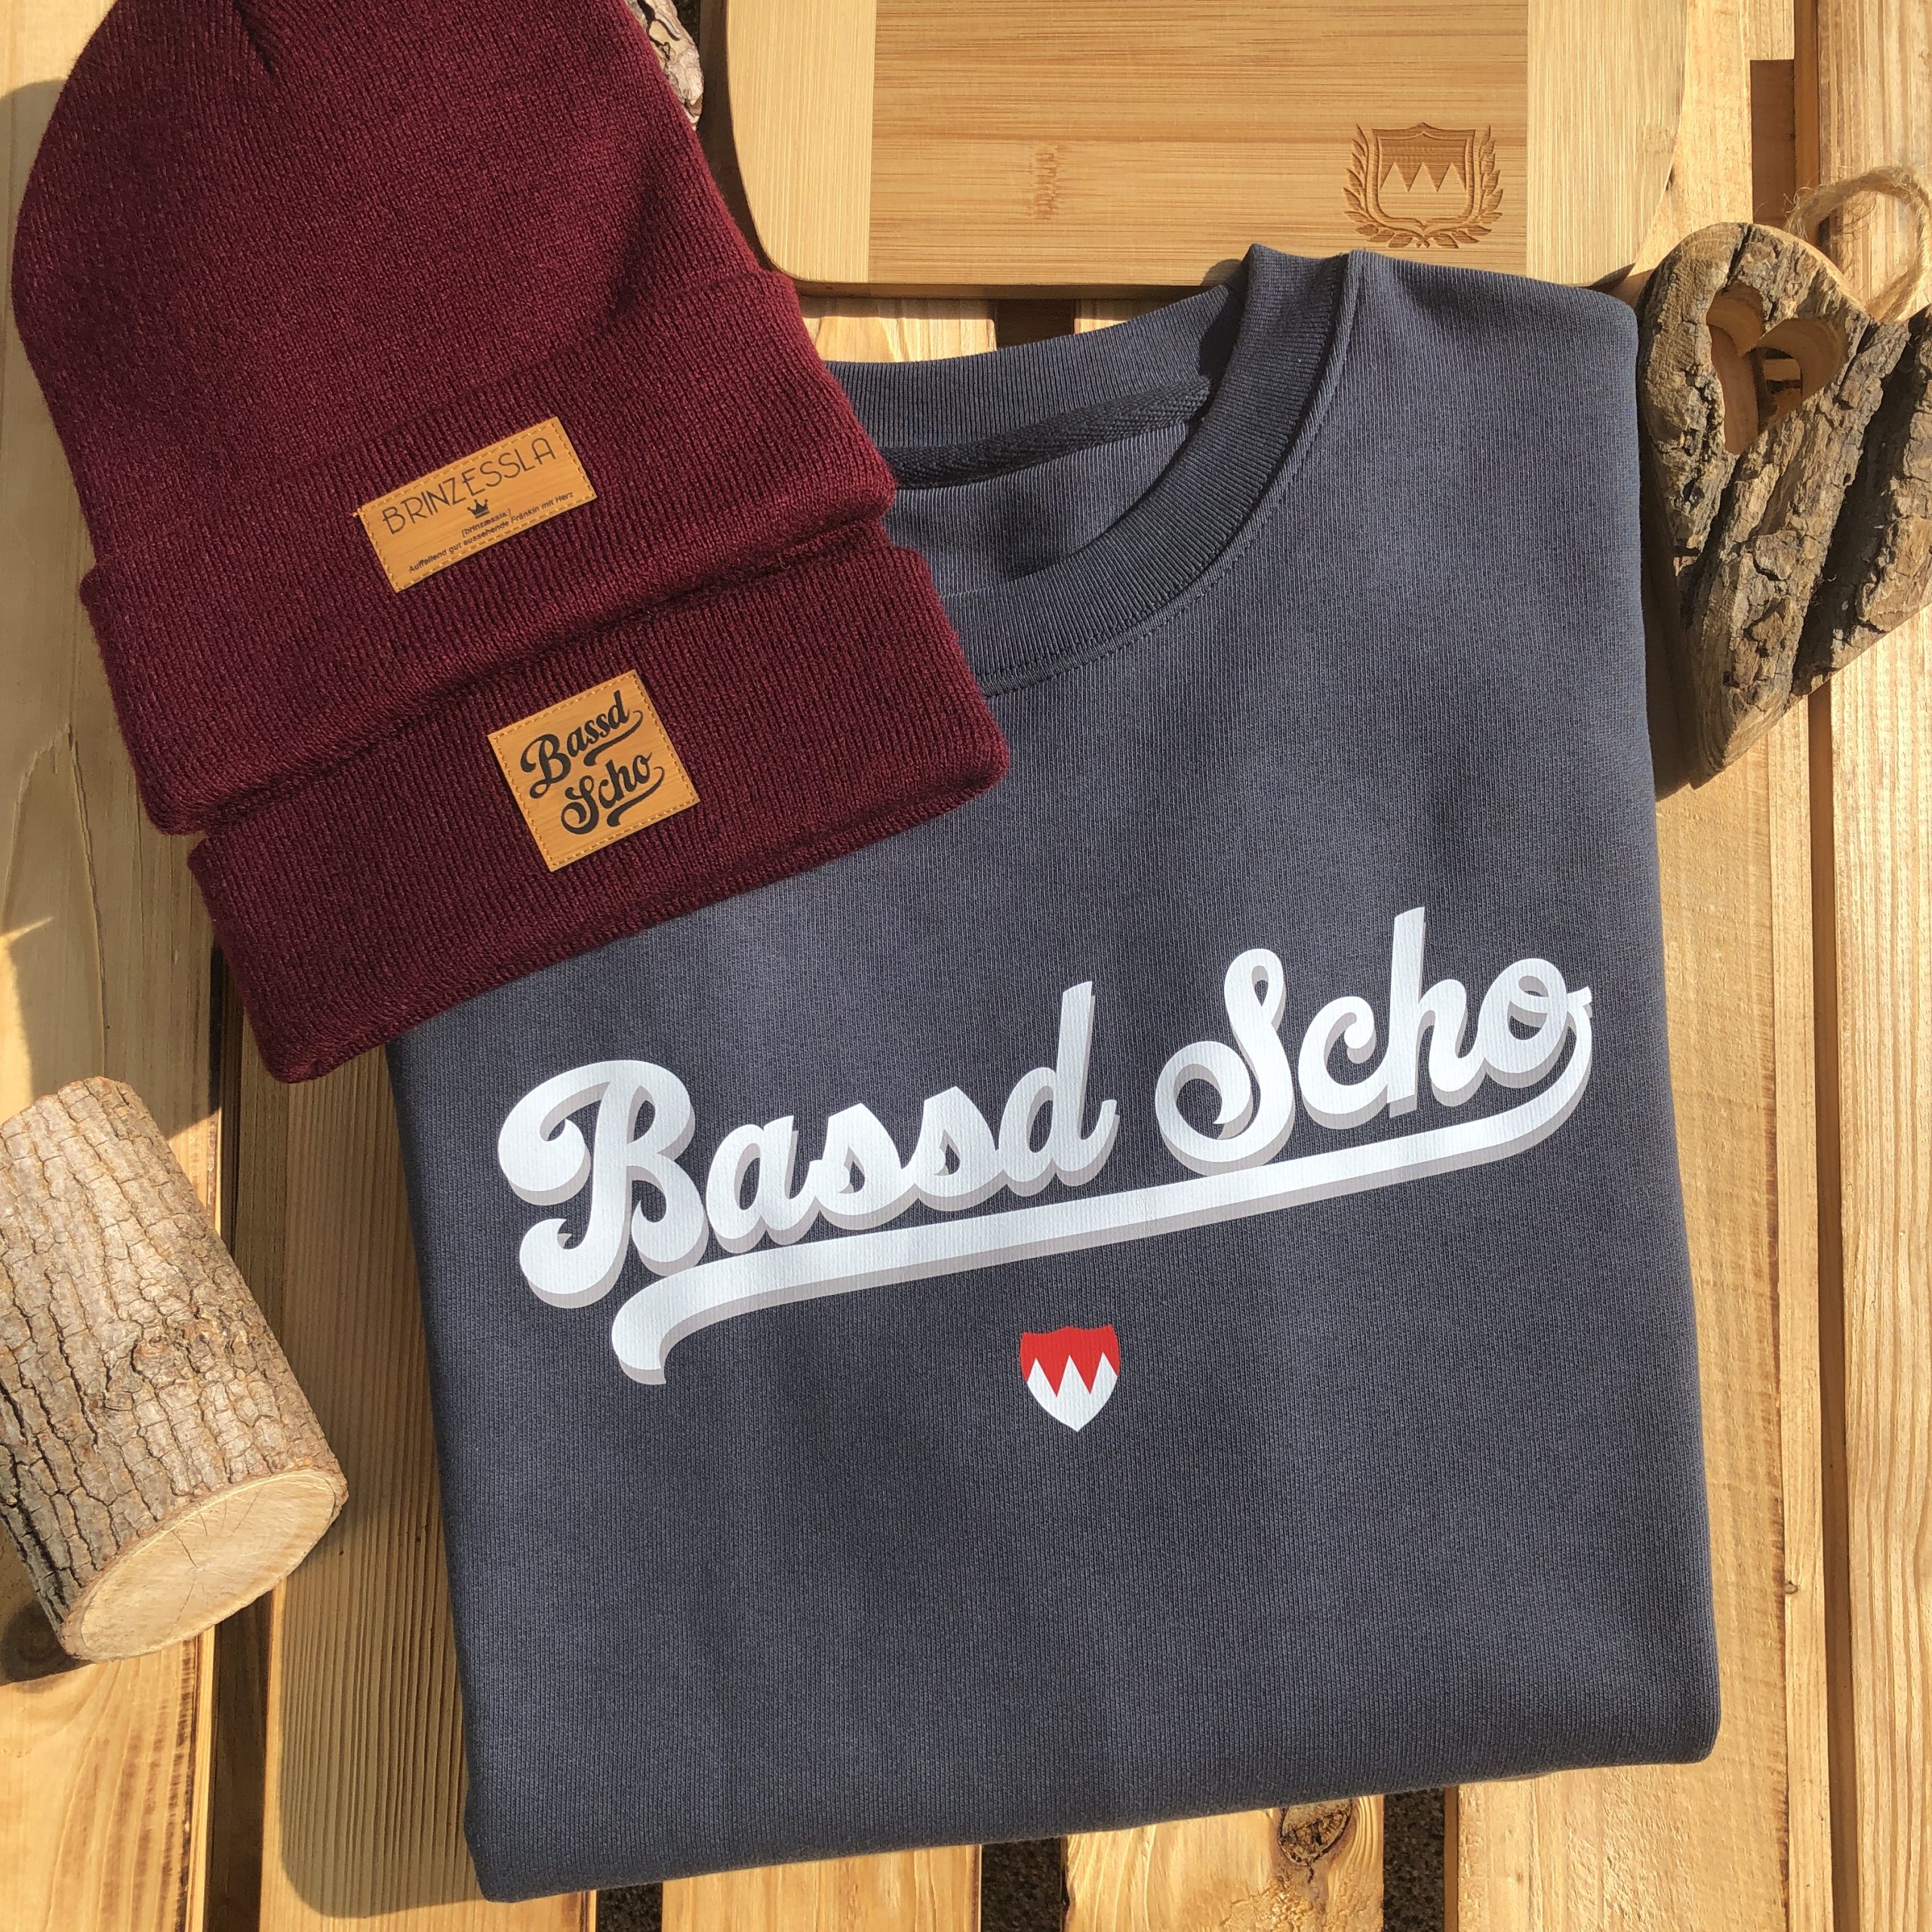 Bassd Scho Sport Pullover Frankenstyle Shop Nürnberg Design Sweater